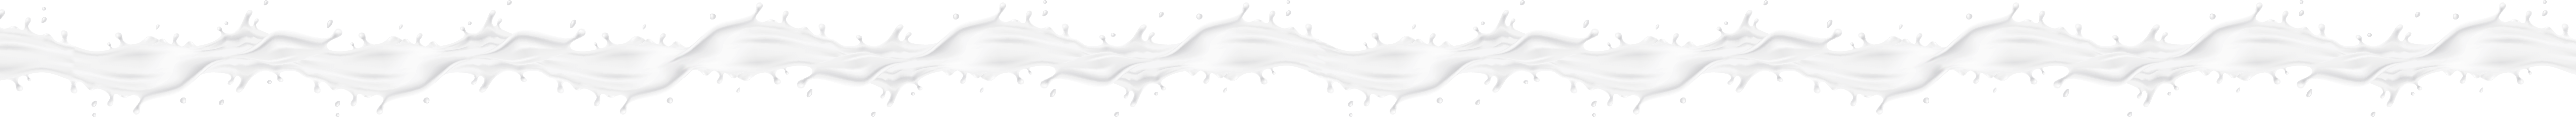 Milk divider | Marlenka